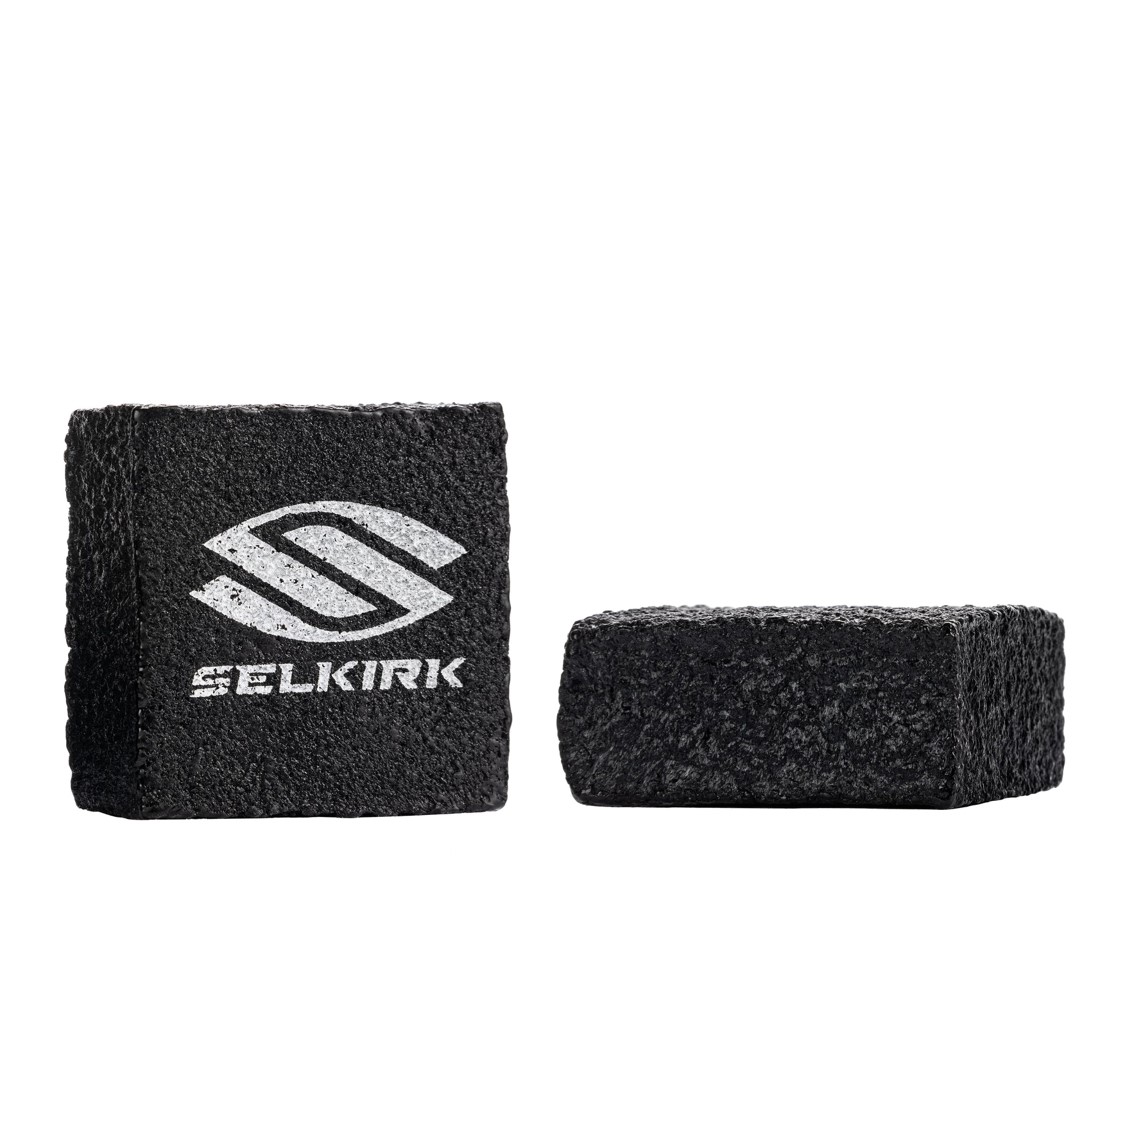 셀커크 카본화이버 피클볼 클리닝 블록(Selkirk Carbon Fiber Pickleball Cleaning Block 2 Pack)